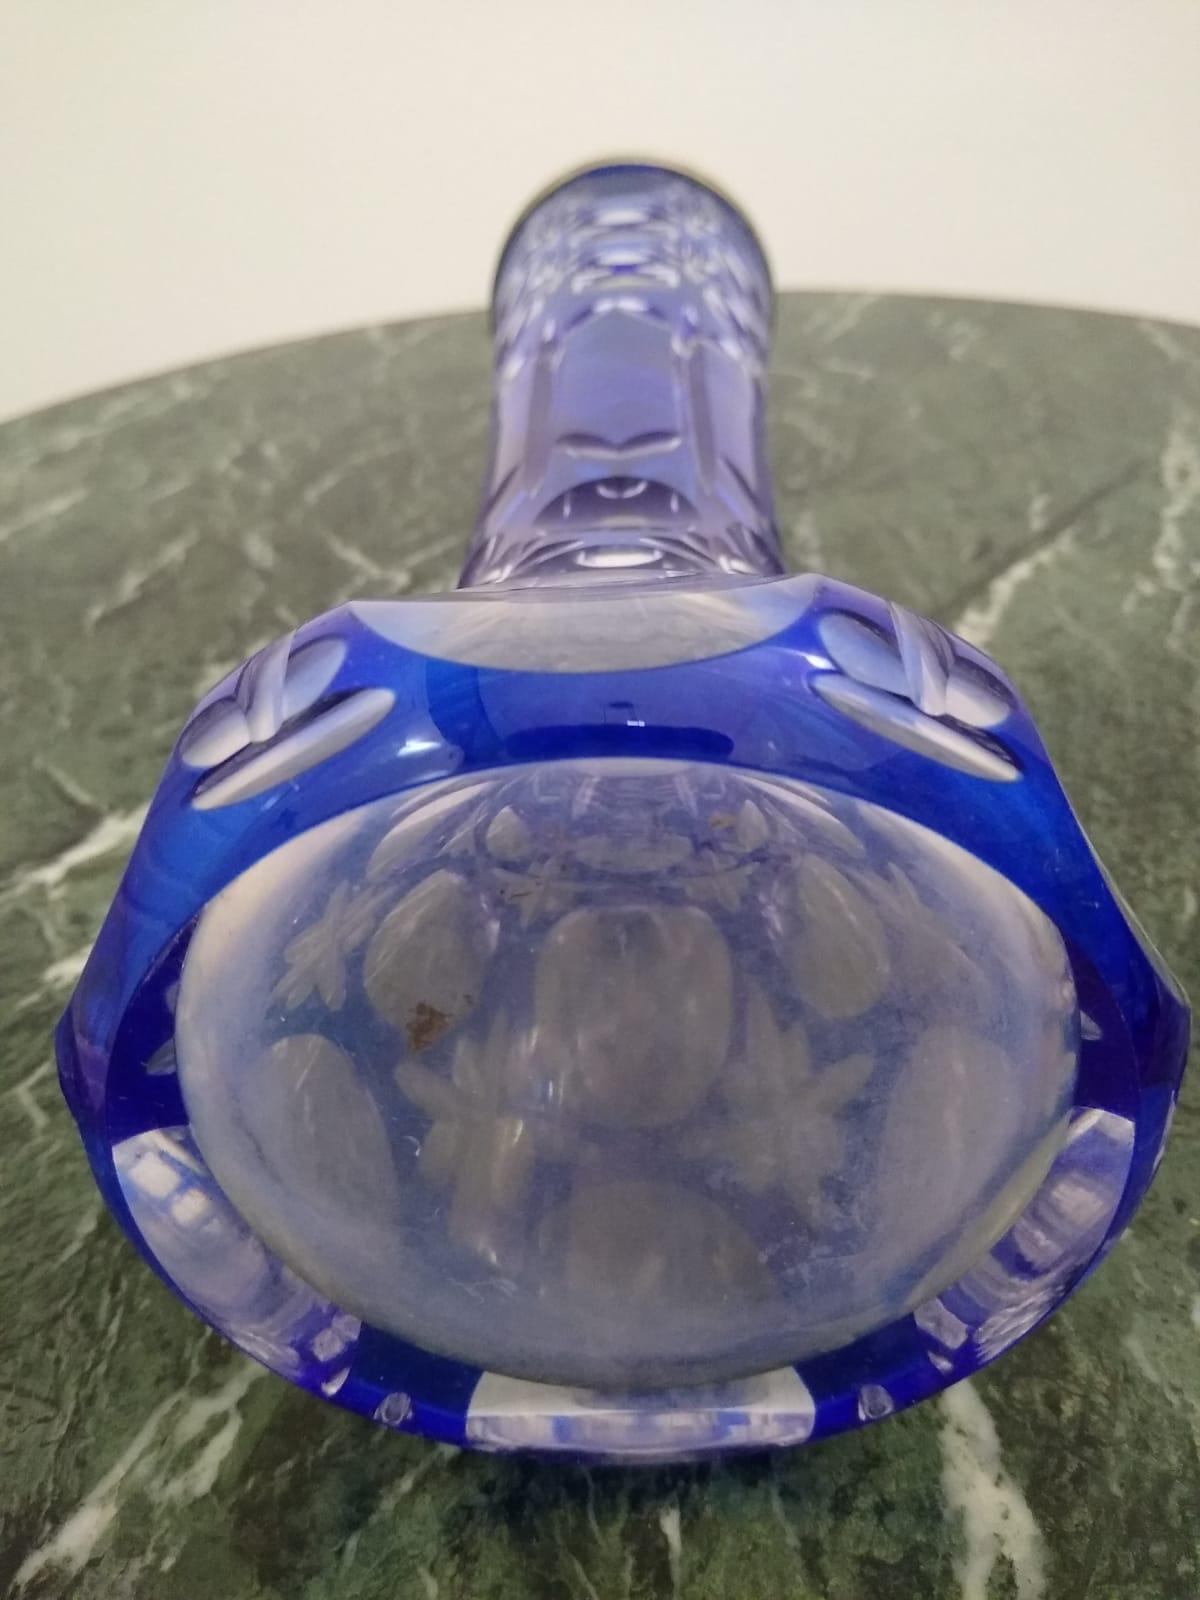 
Vase en cristal bleu taillé et transparent, monté sur une base ronde. Le vase est magnifiquement décoré d'un bord en argent 800. 